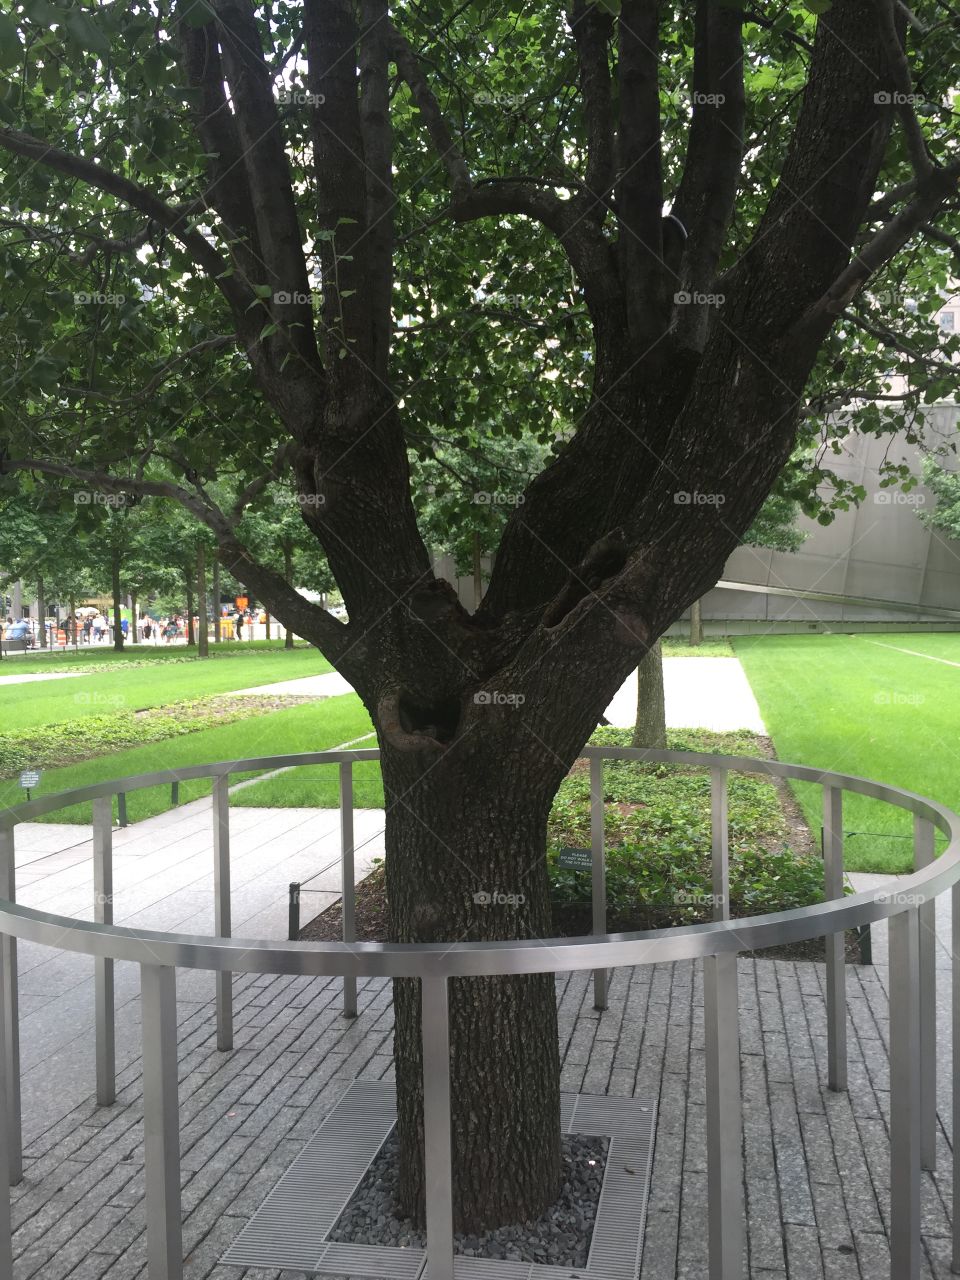 Ground Zero Tree